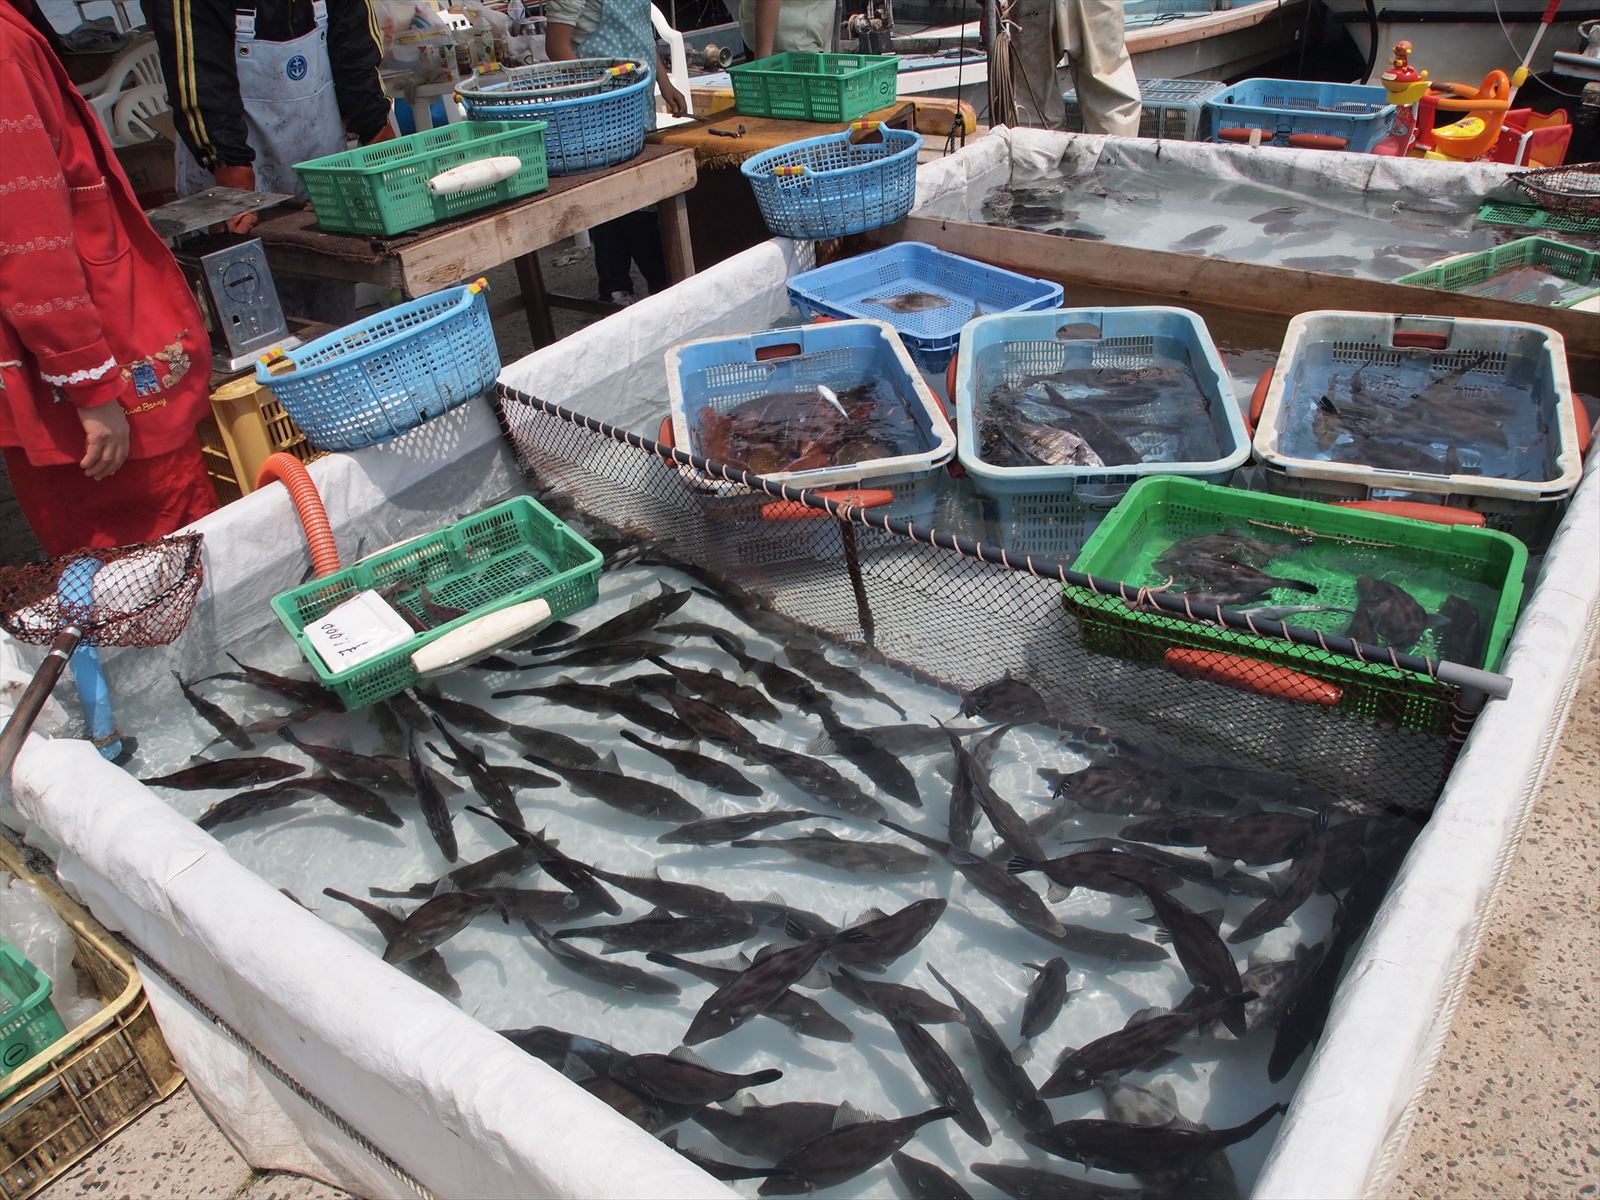 福山市内海町で「うつみ大漁まつりin箱崎漁港」が開催（2015年5月3日）